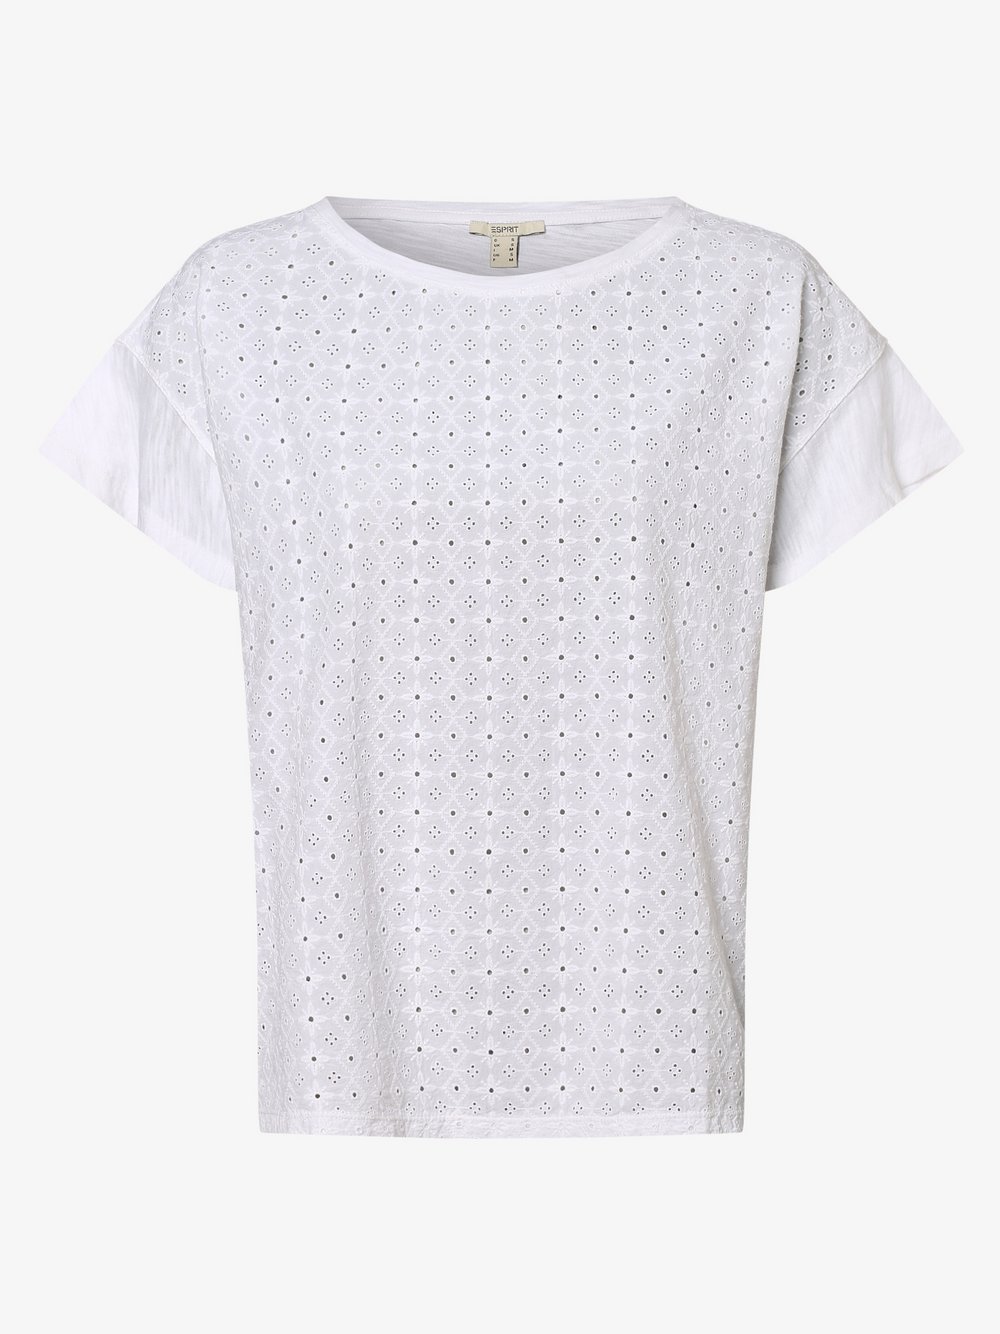 Esprit Casual - T-shirt damski, biały